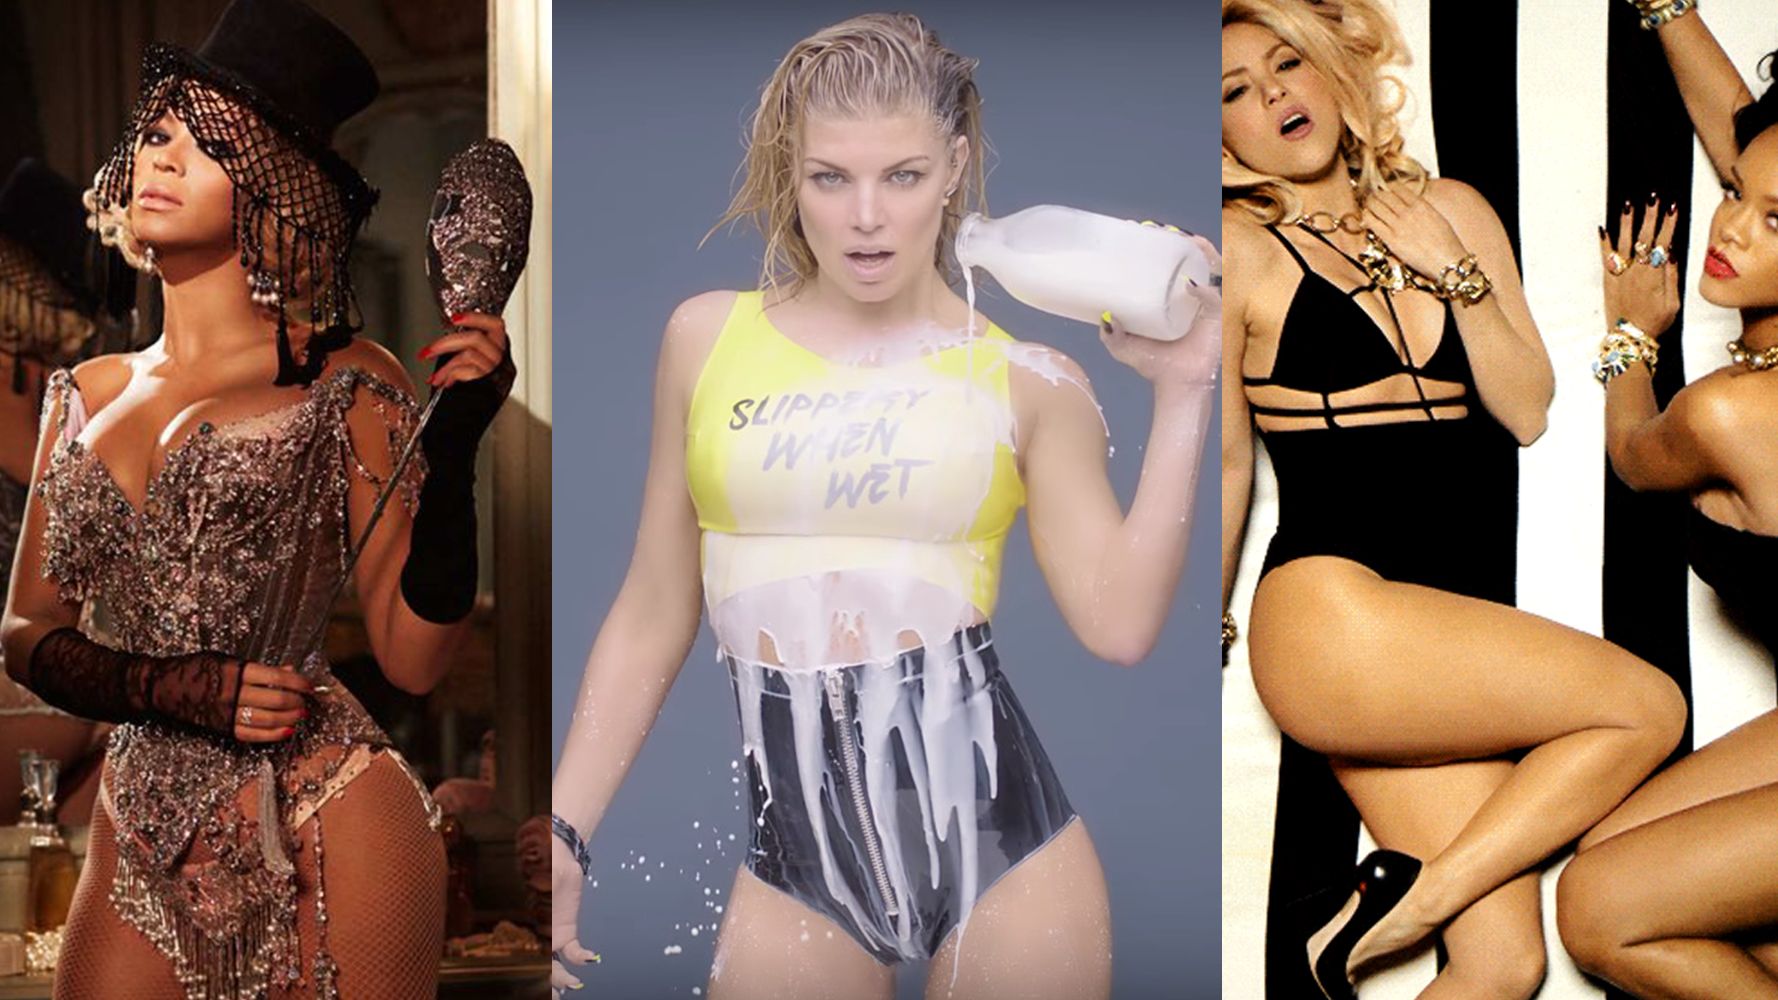 sexist music videos 2015